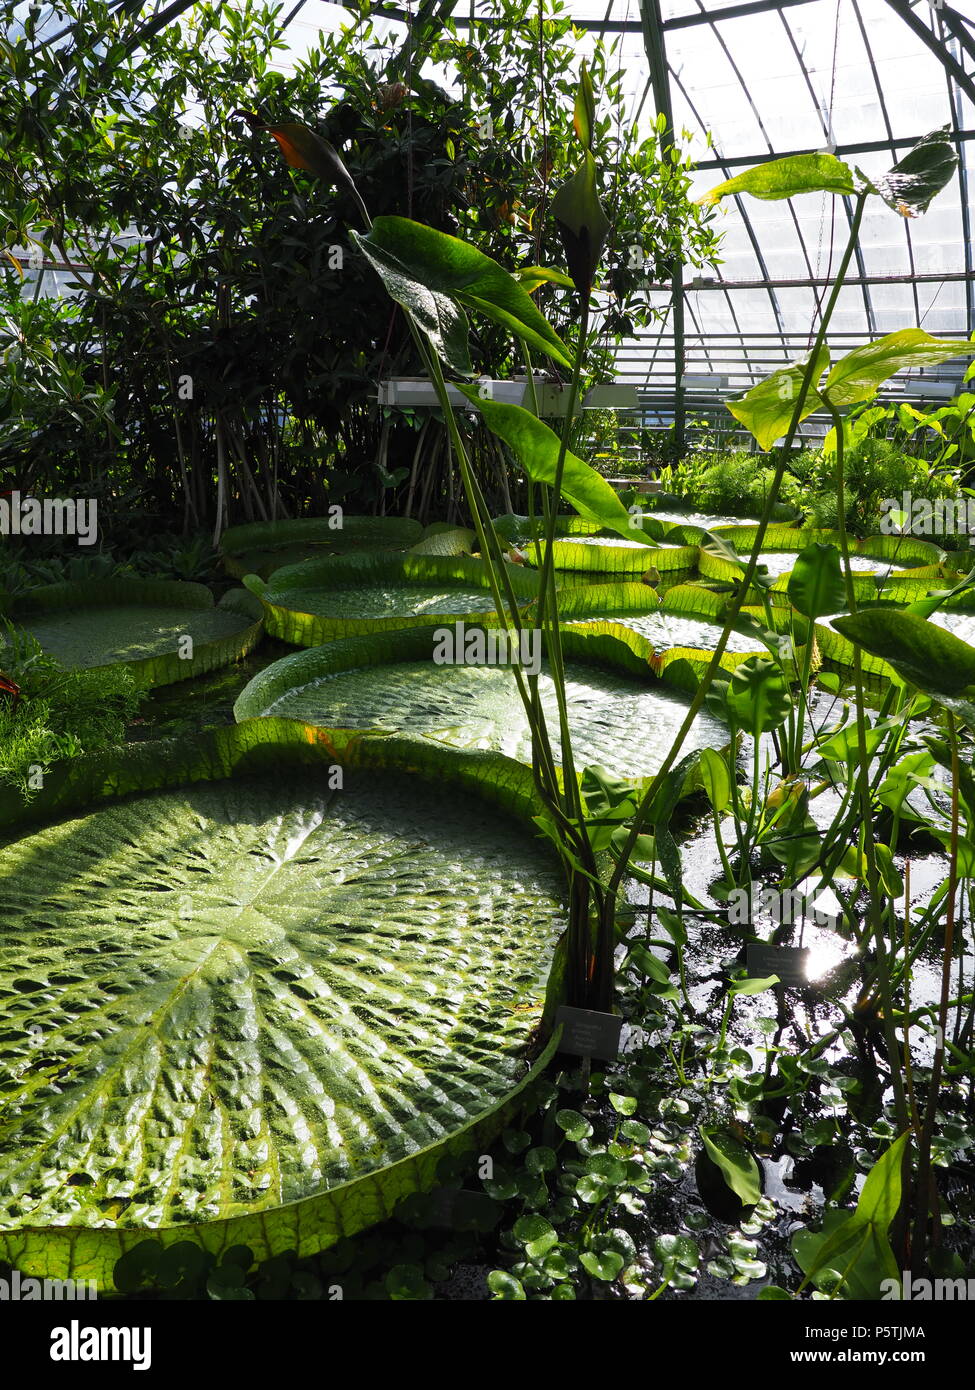 Grüne Victoria cruziana Wasser Platten im botanischen Garten in der  Universität der europäischen Basel Stadt, Schweiz - Vertikal  Stockfotografie - Alamy